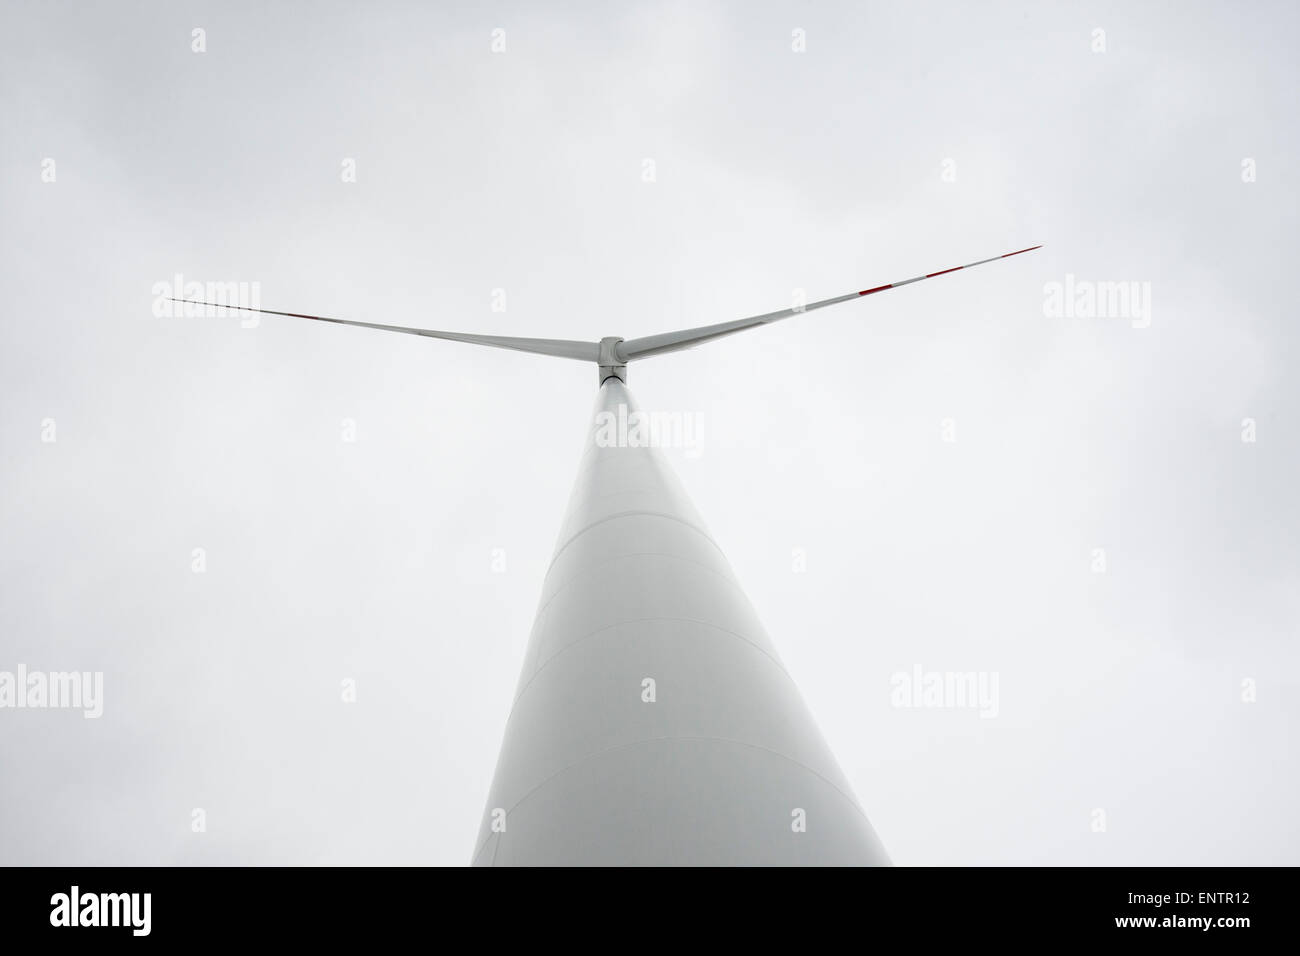 Una turbina eolica vicino a Kobylnica, Polonia, si allunga verso il cielo. Foto Stock